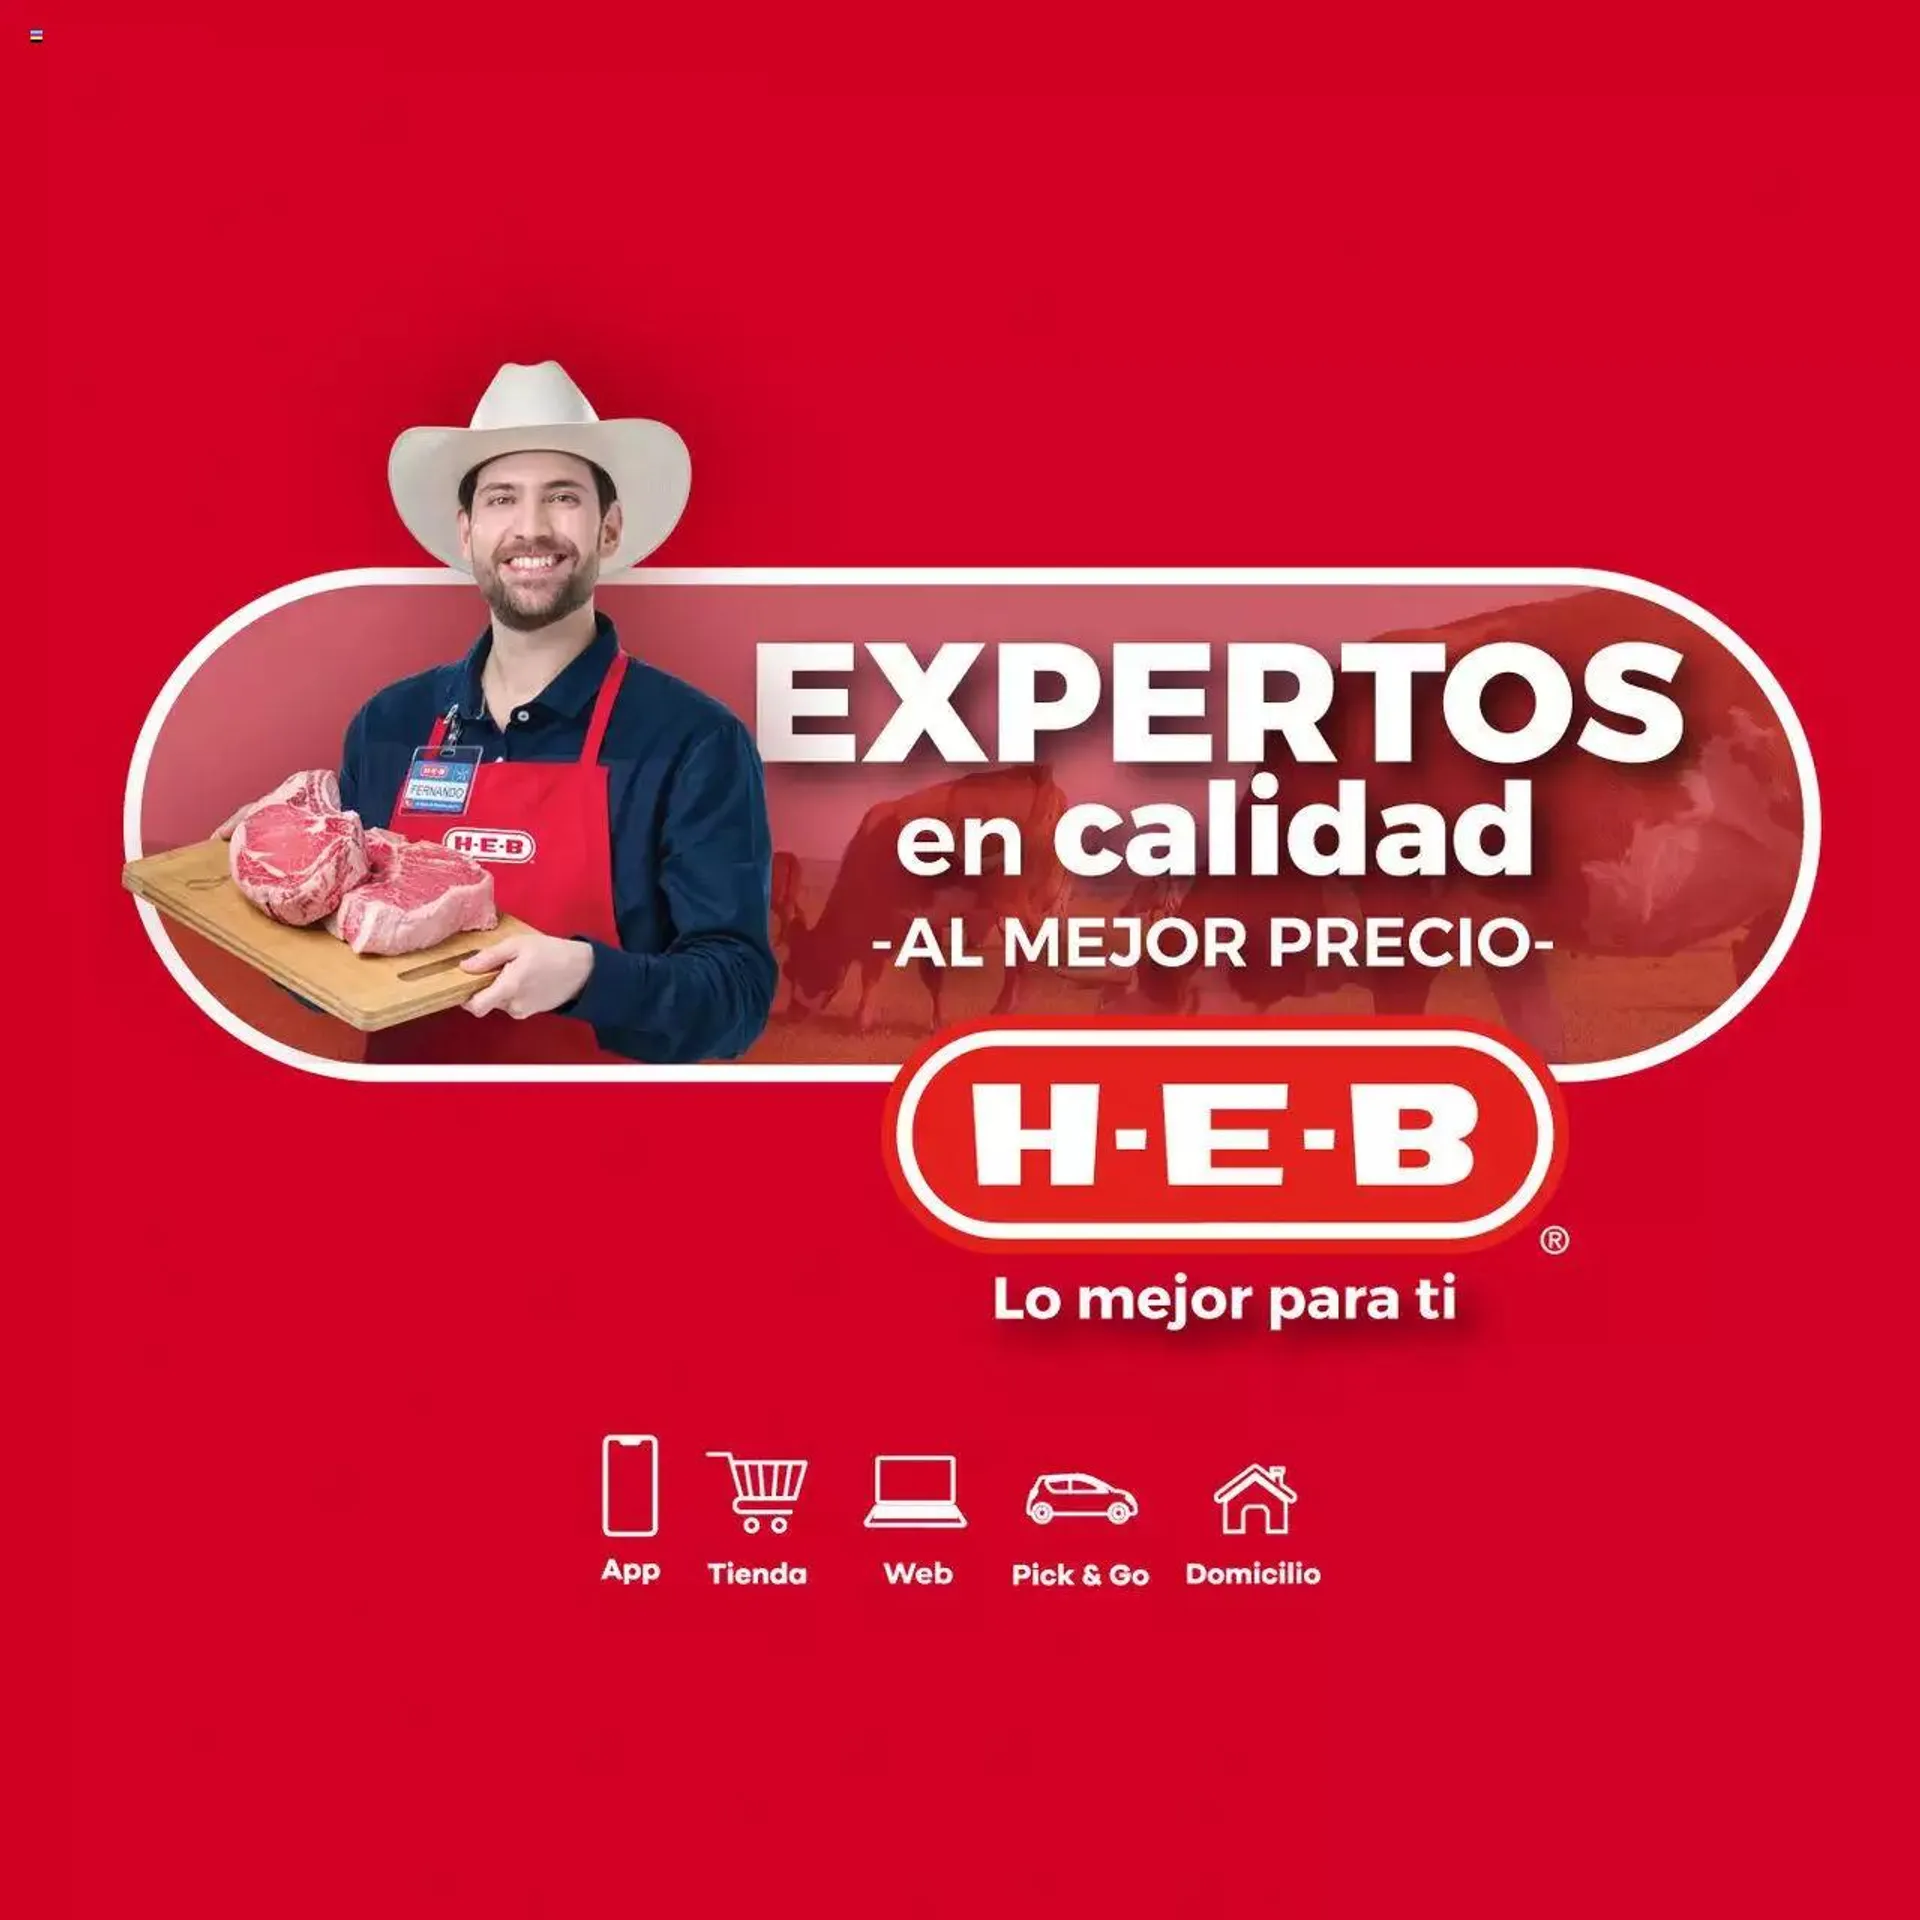 H-E-B folleto Expertos en calidad - 0